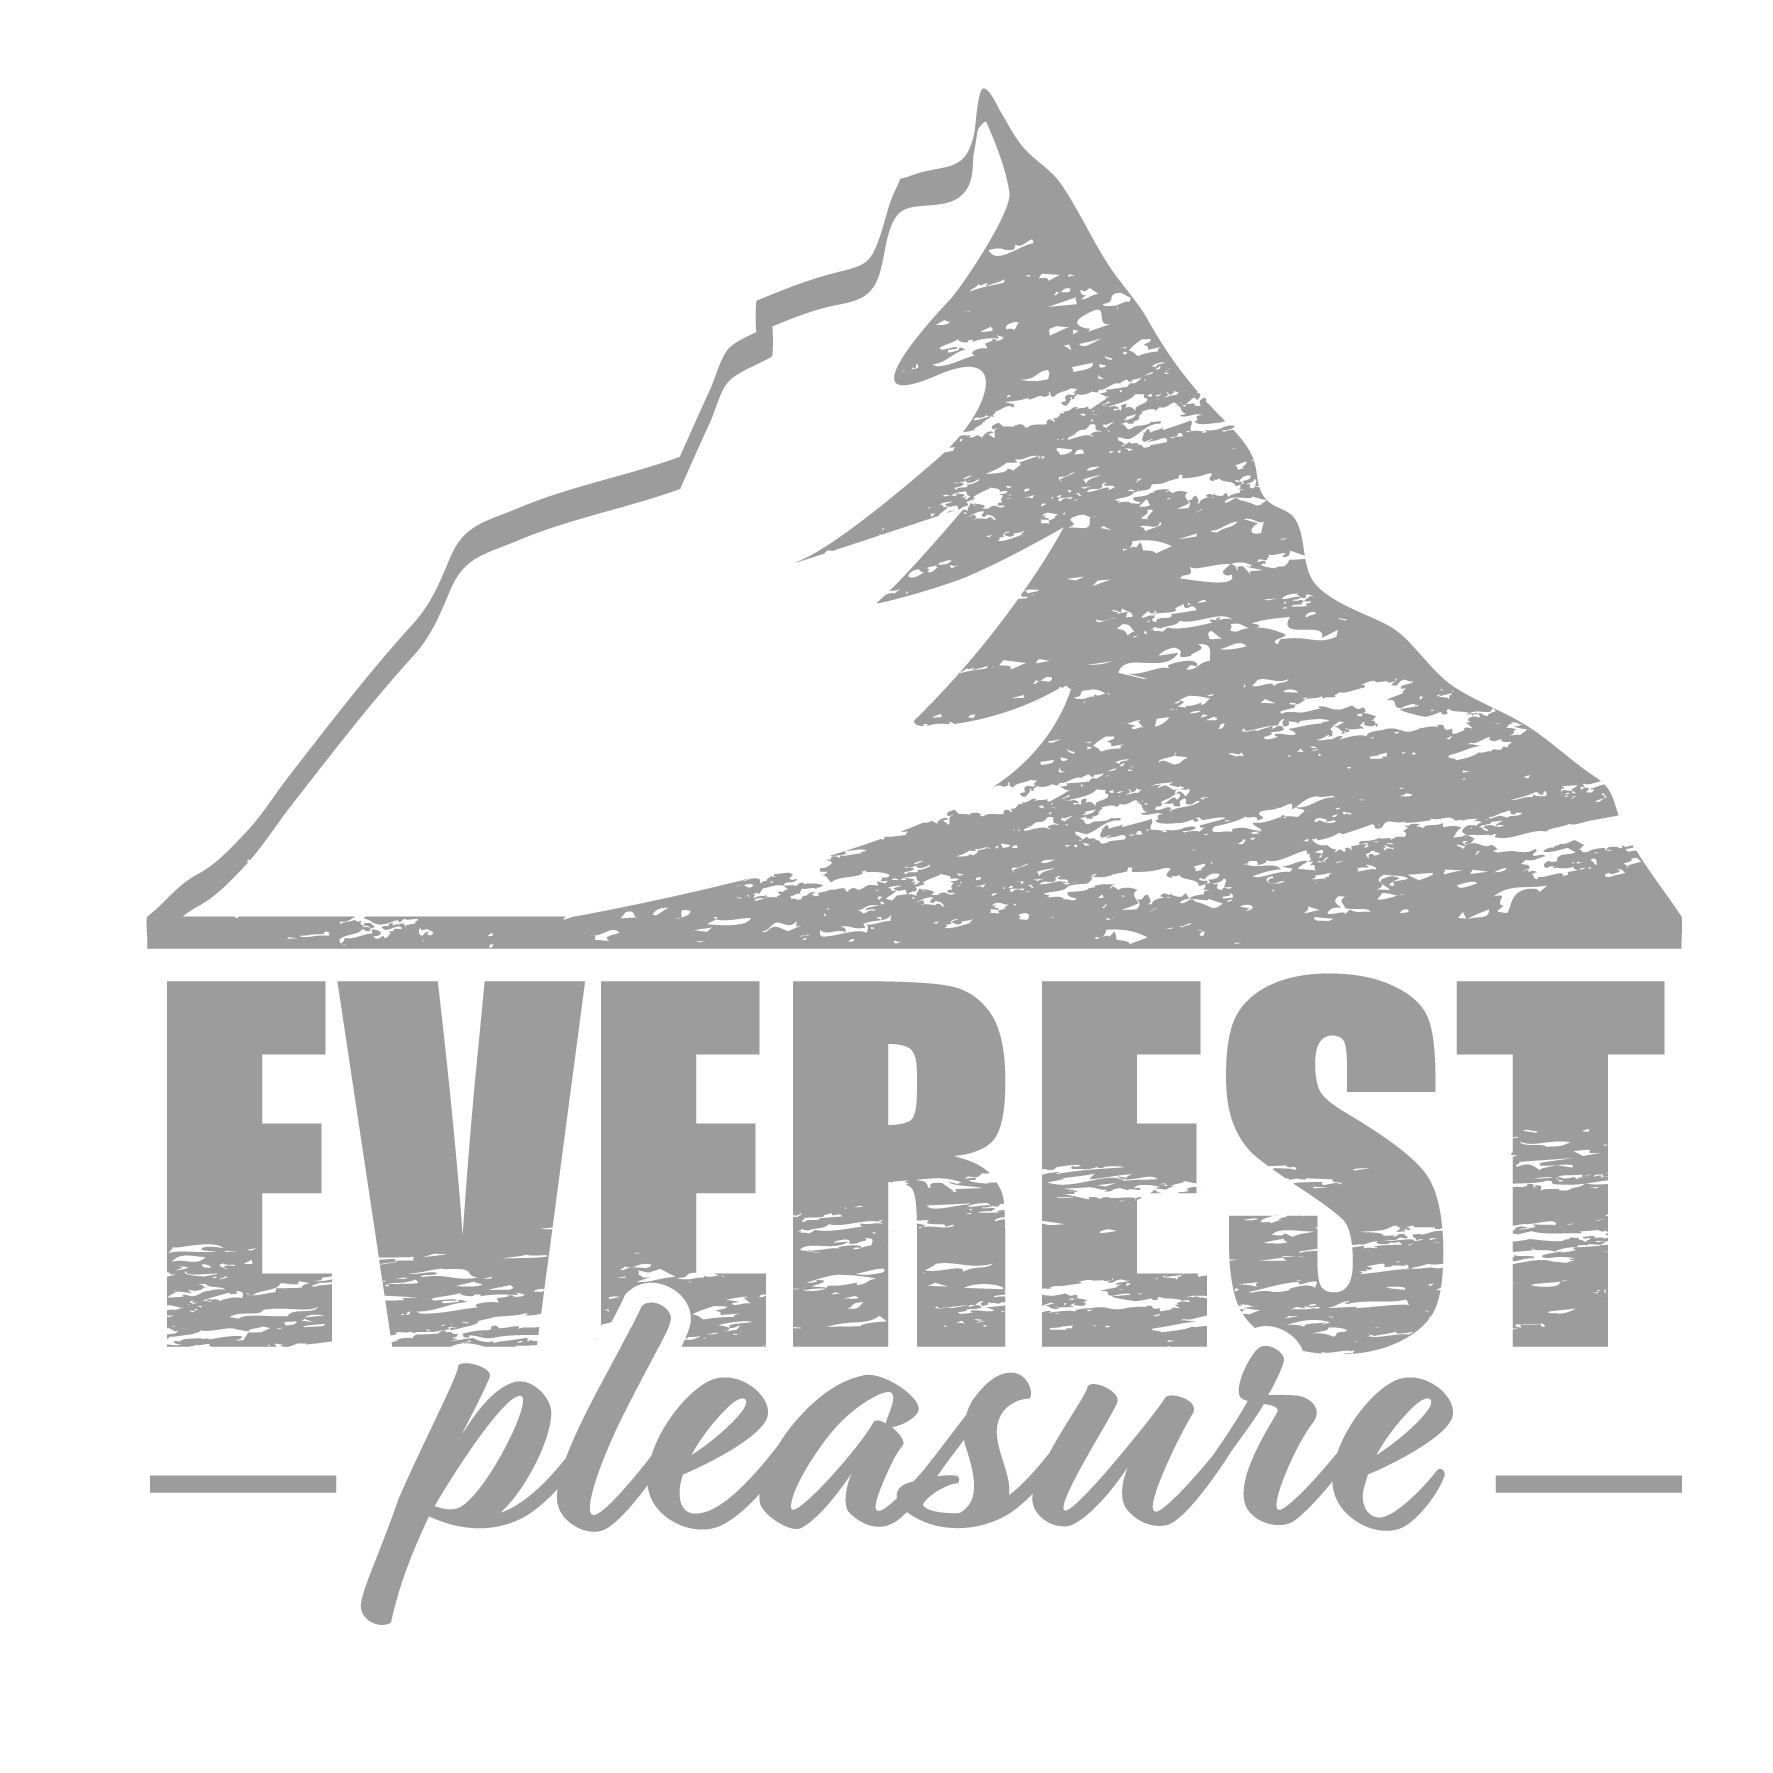 Everest Pleasure